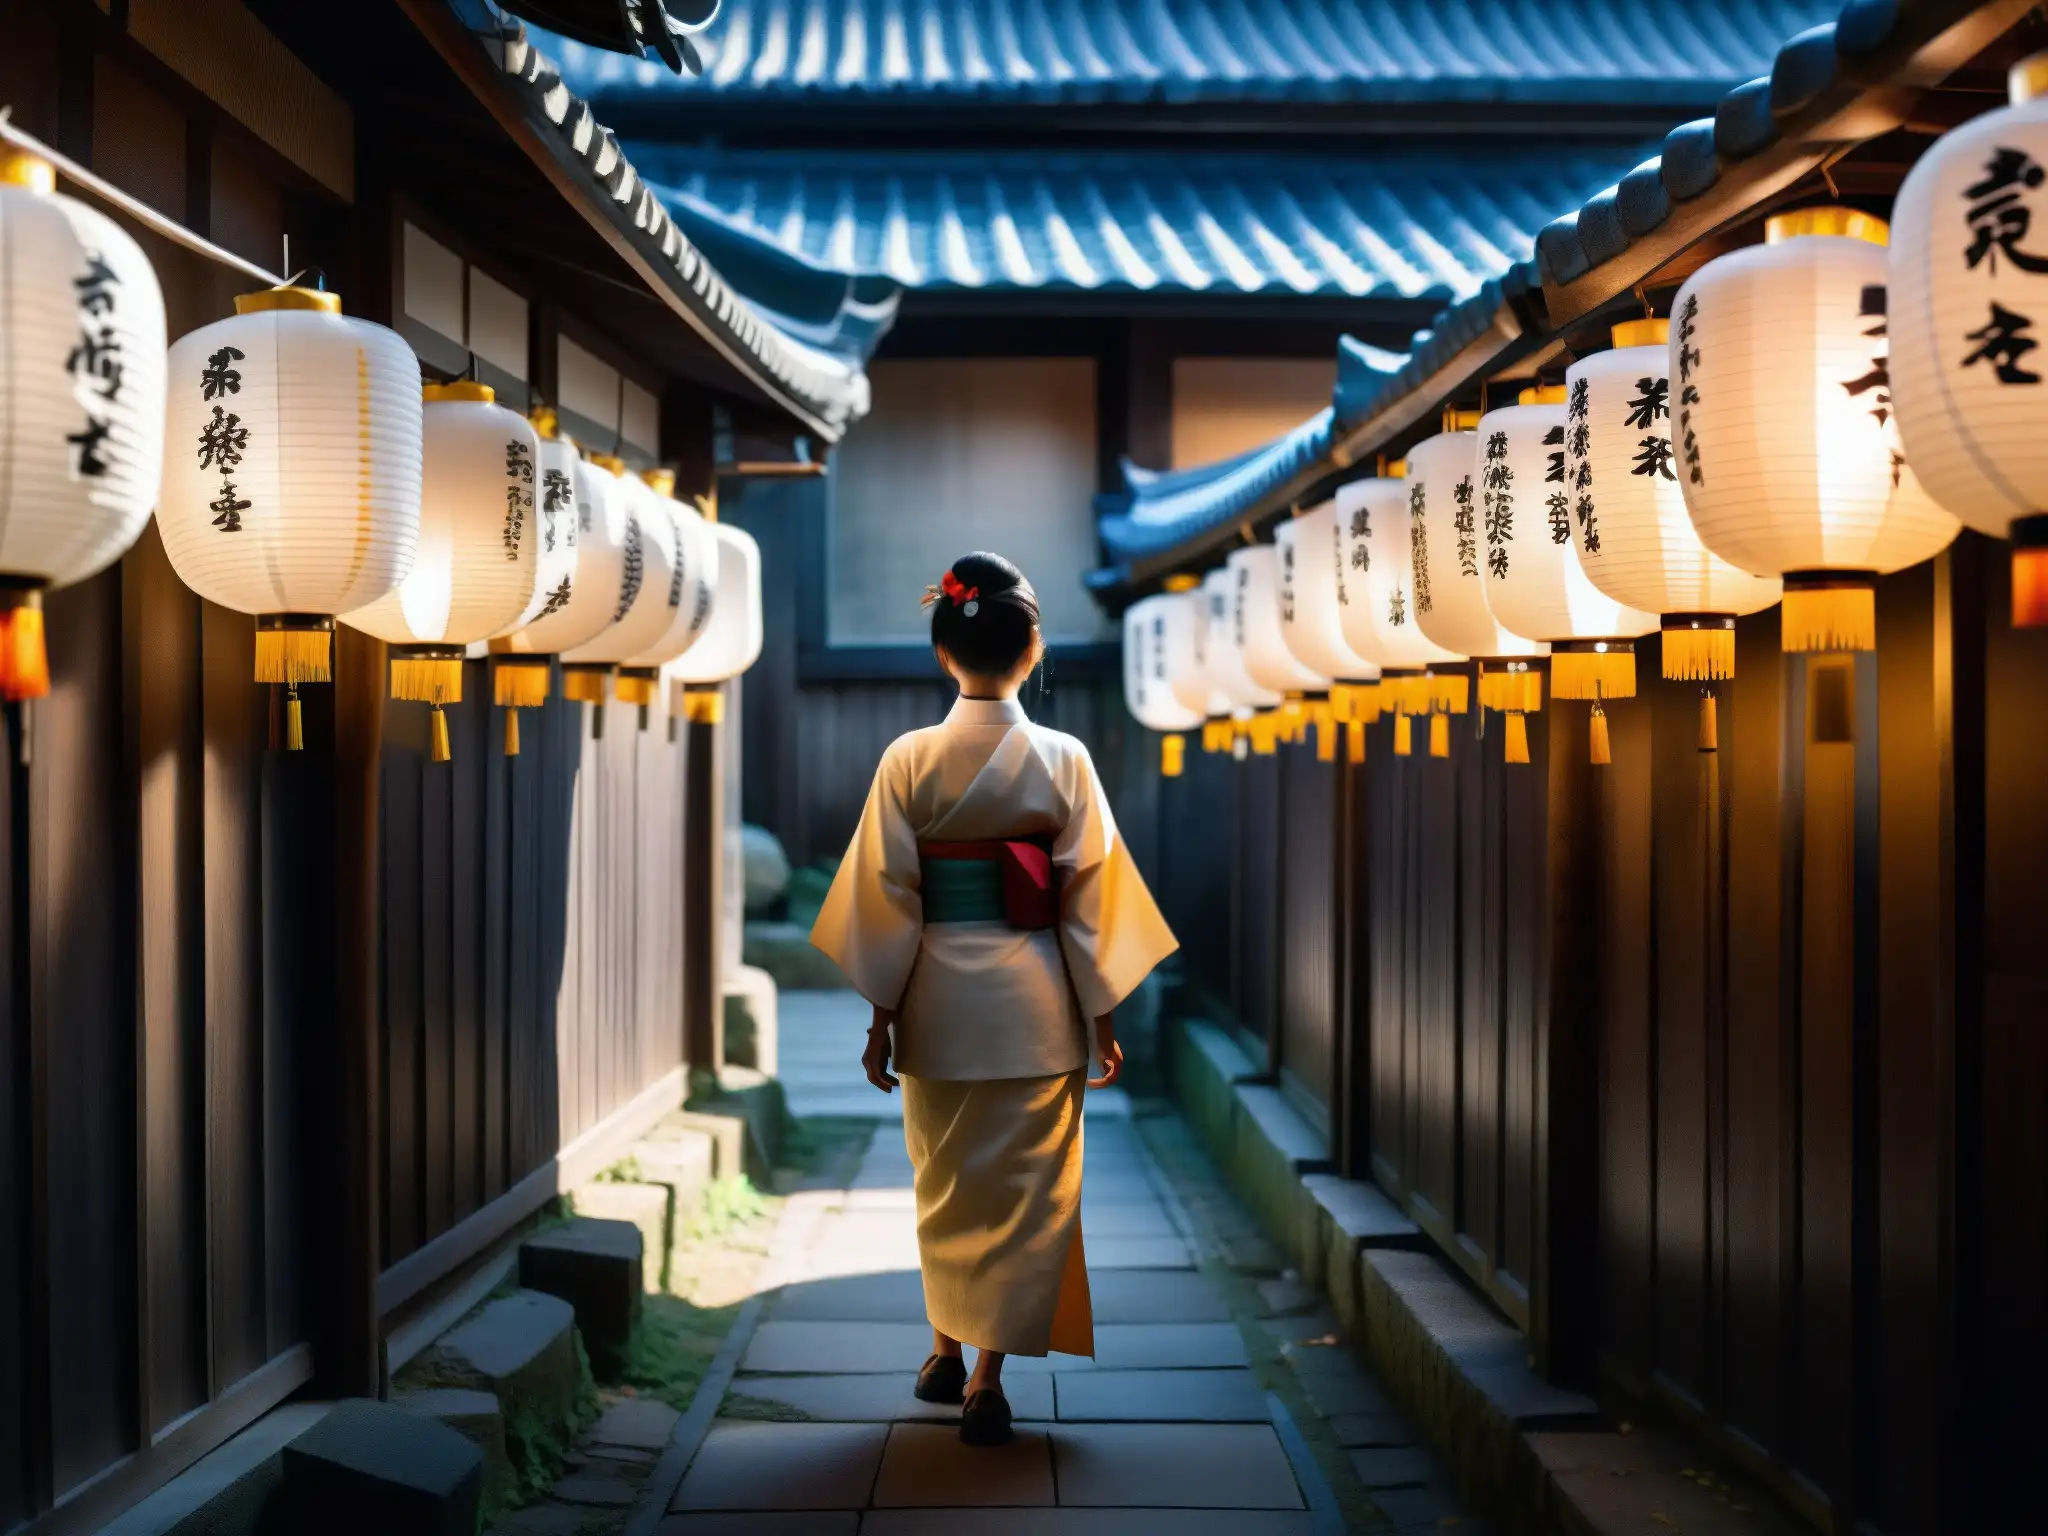 Un misterioso callejón japonés con linternas tradicionales, una figura en kimono blanco y un smartphone